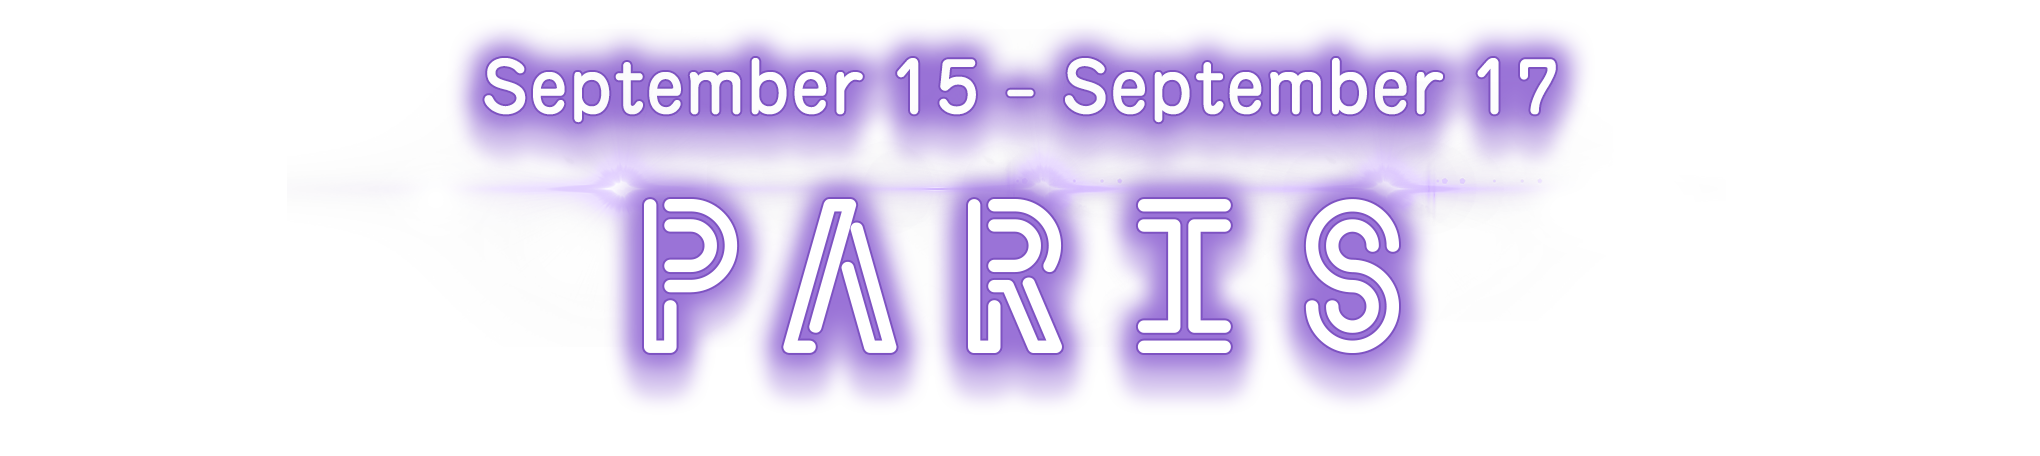 September 15 - September 17 PARIS